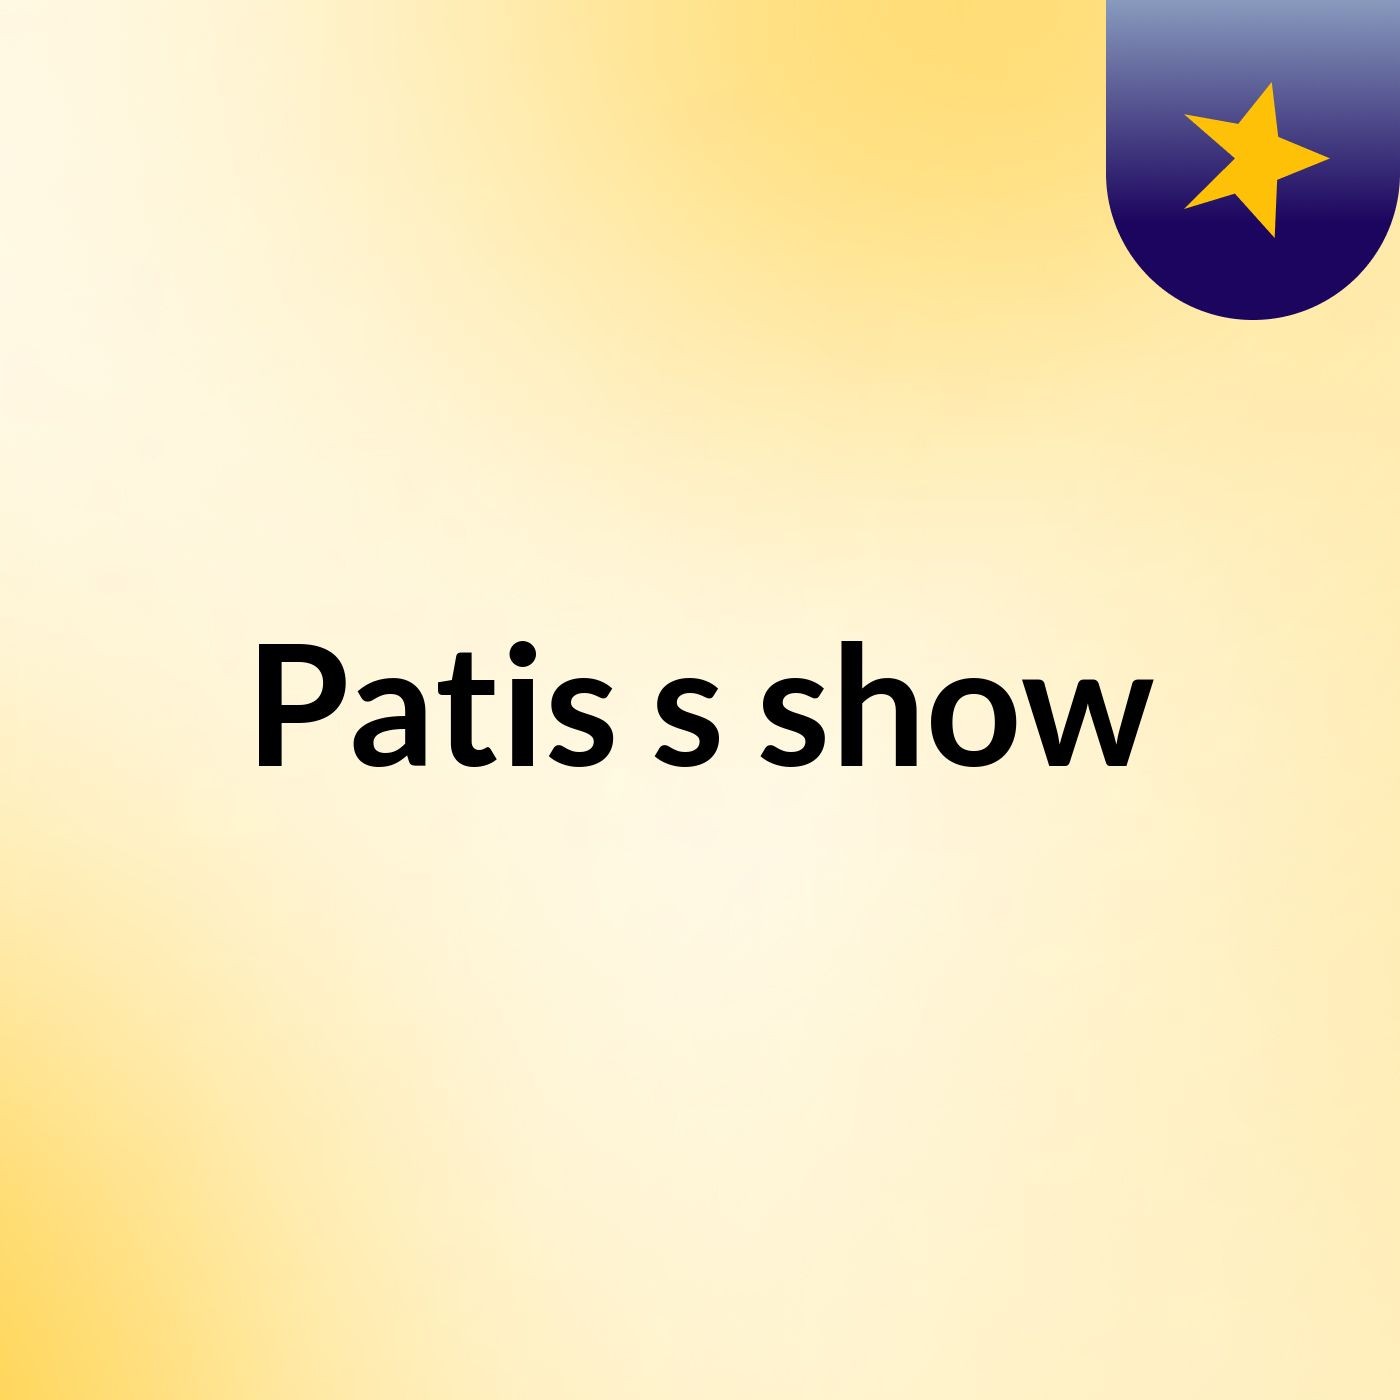 Patis's show